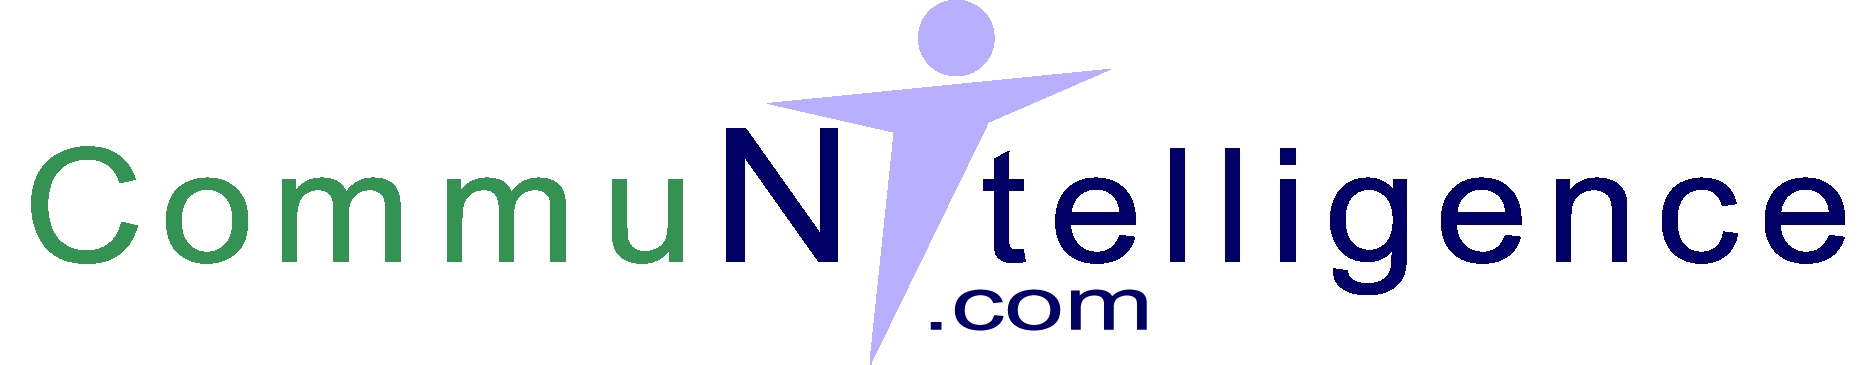 Communitelligence logo